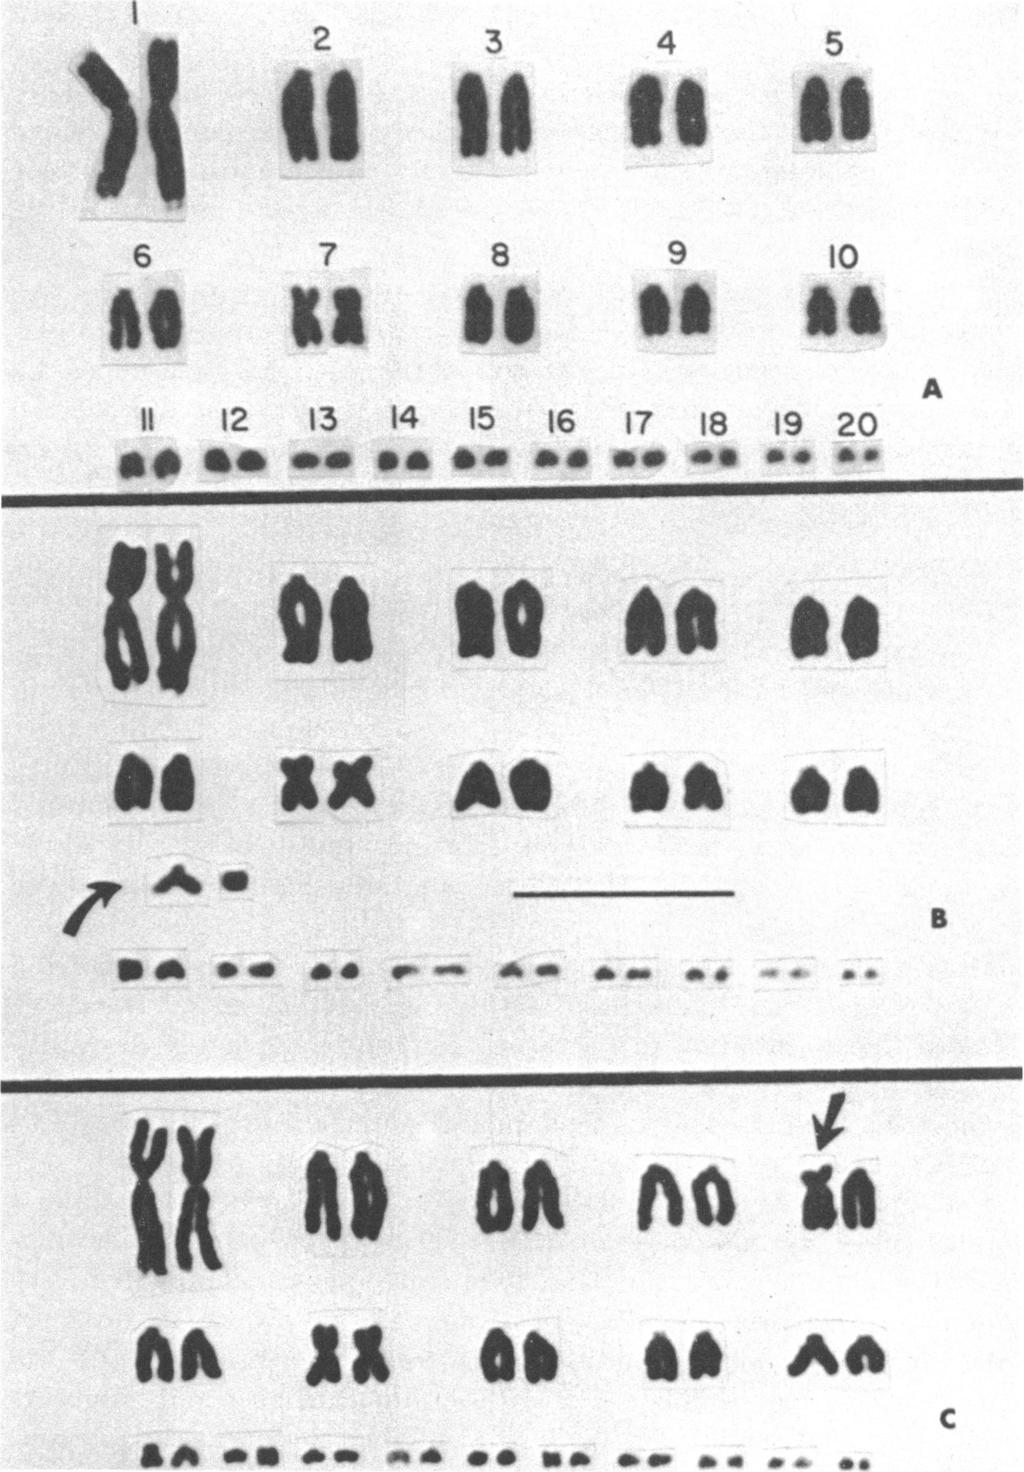 ^s ~~2 3 4 5 o 7 8 9 10 1 12 13 14 15 16 17 18 19 20 *. ** ee S ** ** ** *w A At. 31 as *IAA B *fl a. as.*. aaw a..^ * FIG. 1. Chromosomes of three specimens of Sceloporus clarki (2n = 40) from southern Arizona.